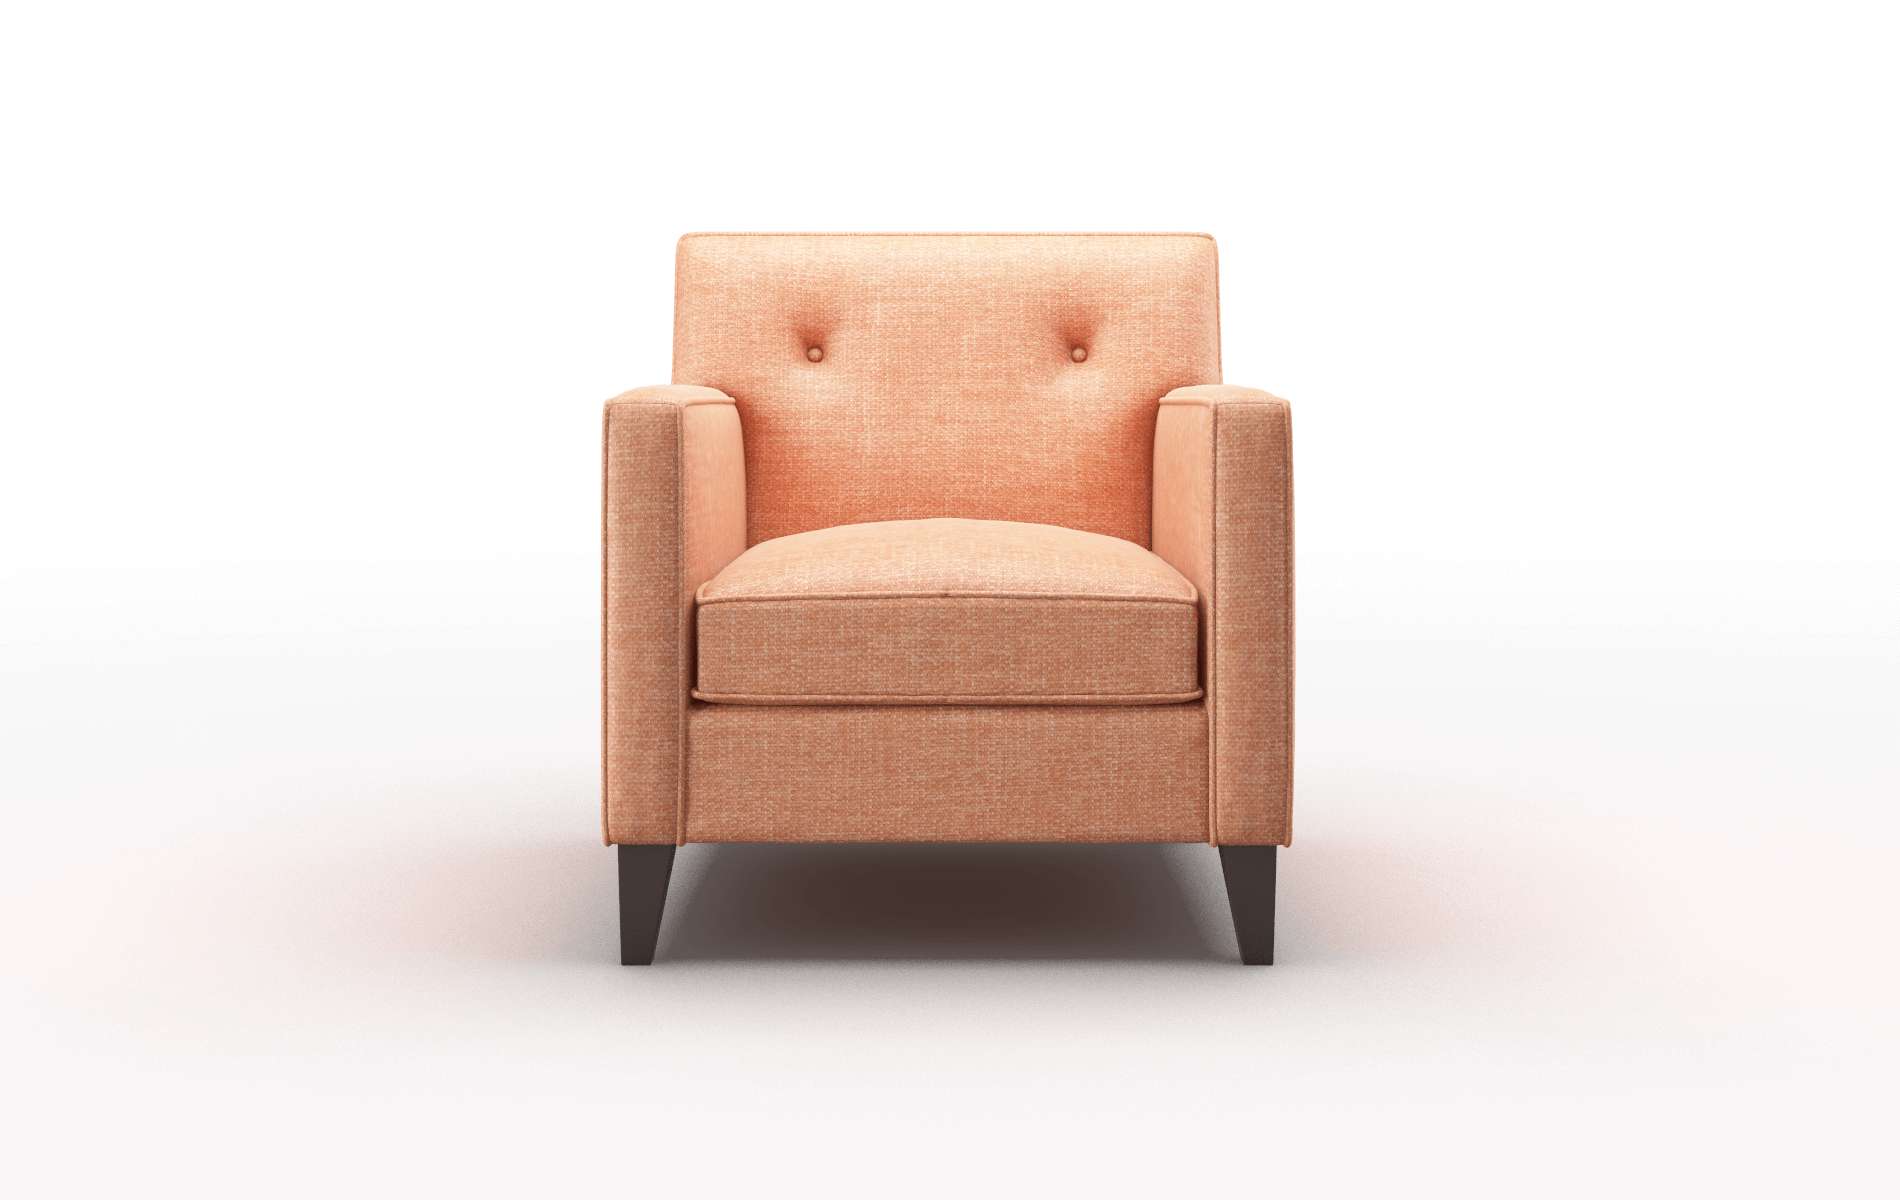 Harper Durham Tangerine chair espresso legs